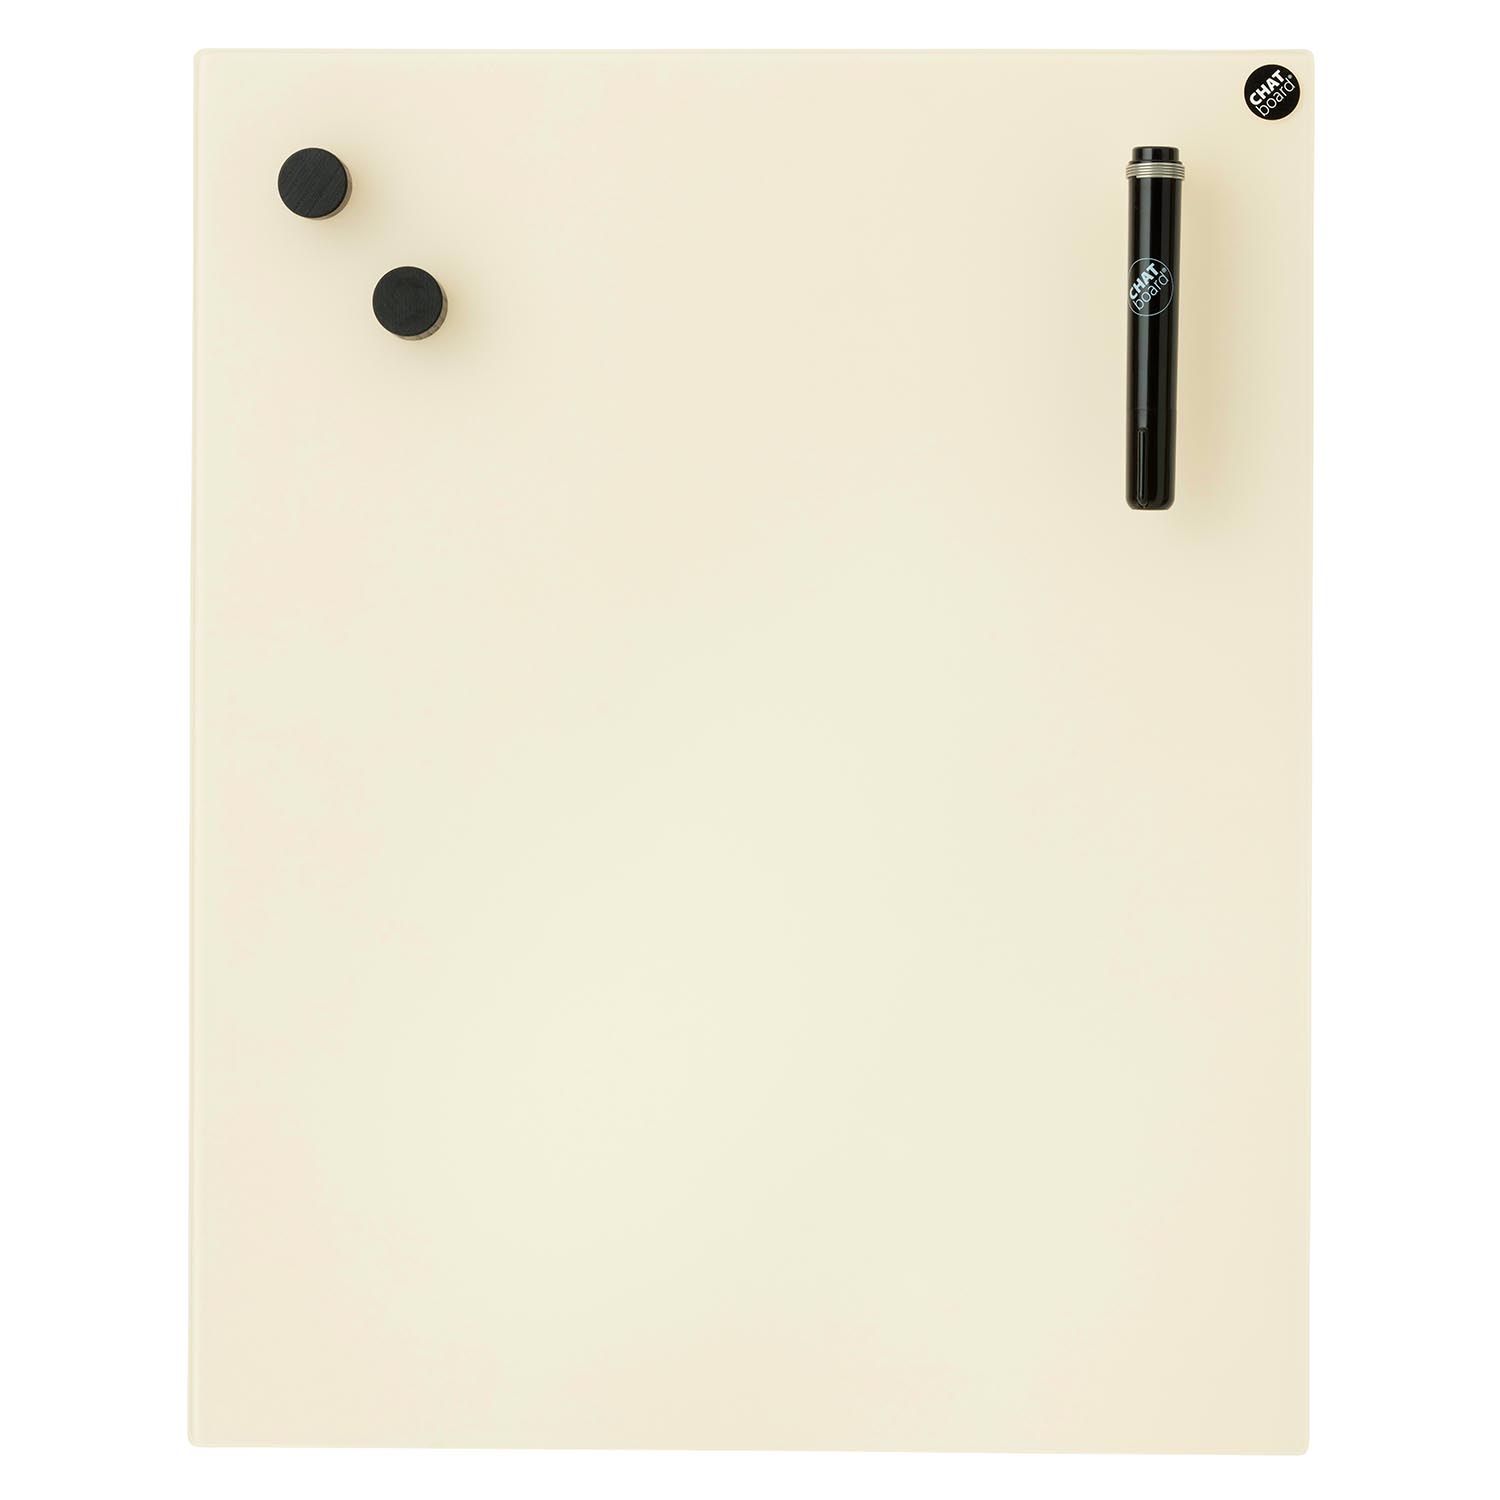 Classic Schreibtafel, Grösse 69.5 x 69.5 cm, Ausrichtung horizontal, Glas orange 10 mto von Chat Board